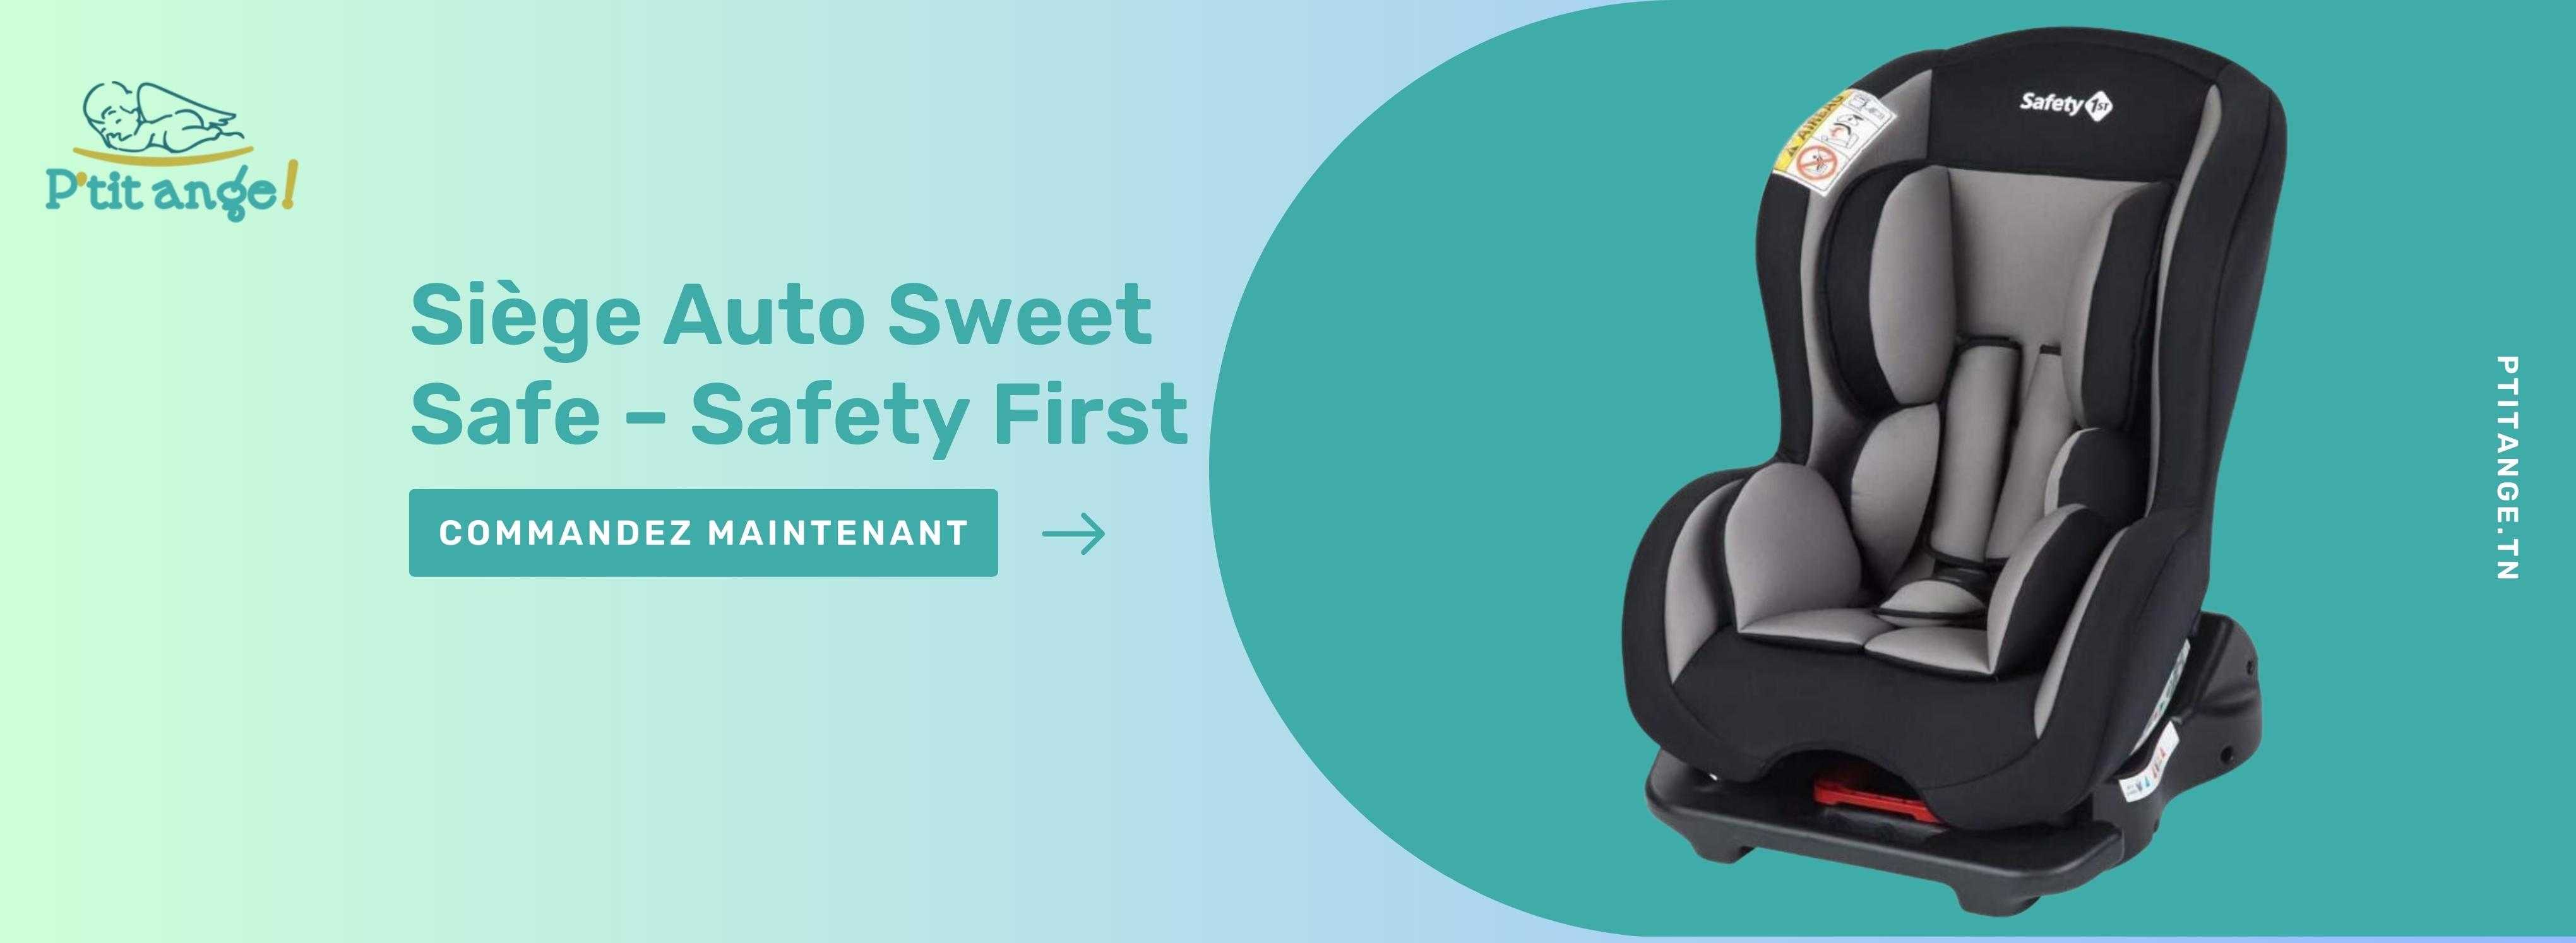 Siège Auto Sweet Safe – Safety First